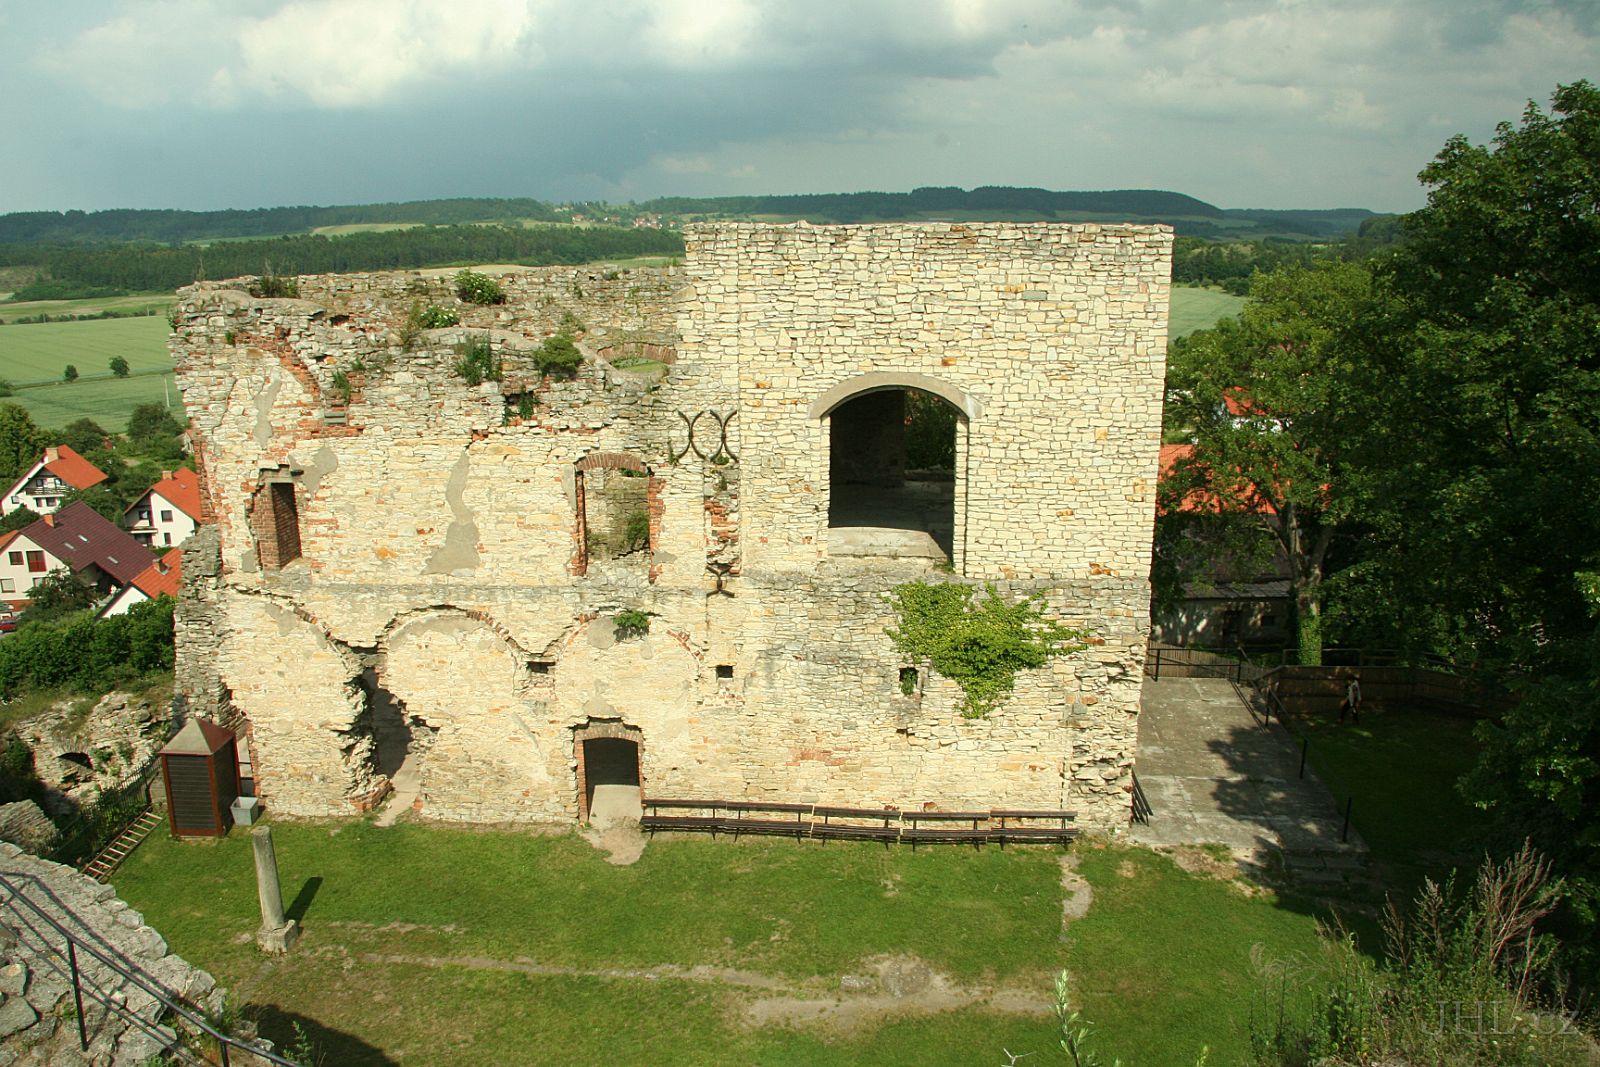 060617c266.JPG - hrad Košumberk - zřícenina hradu postaveného kolem roku 1300